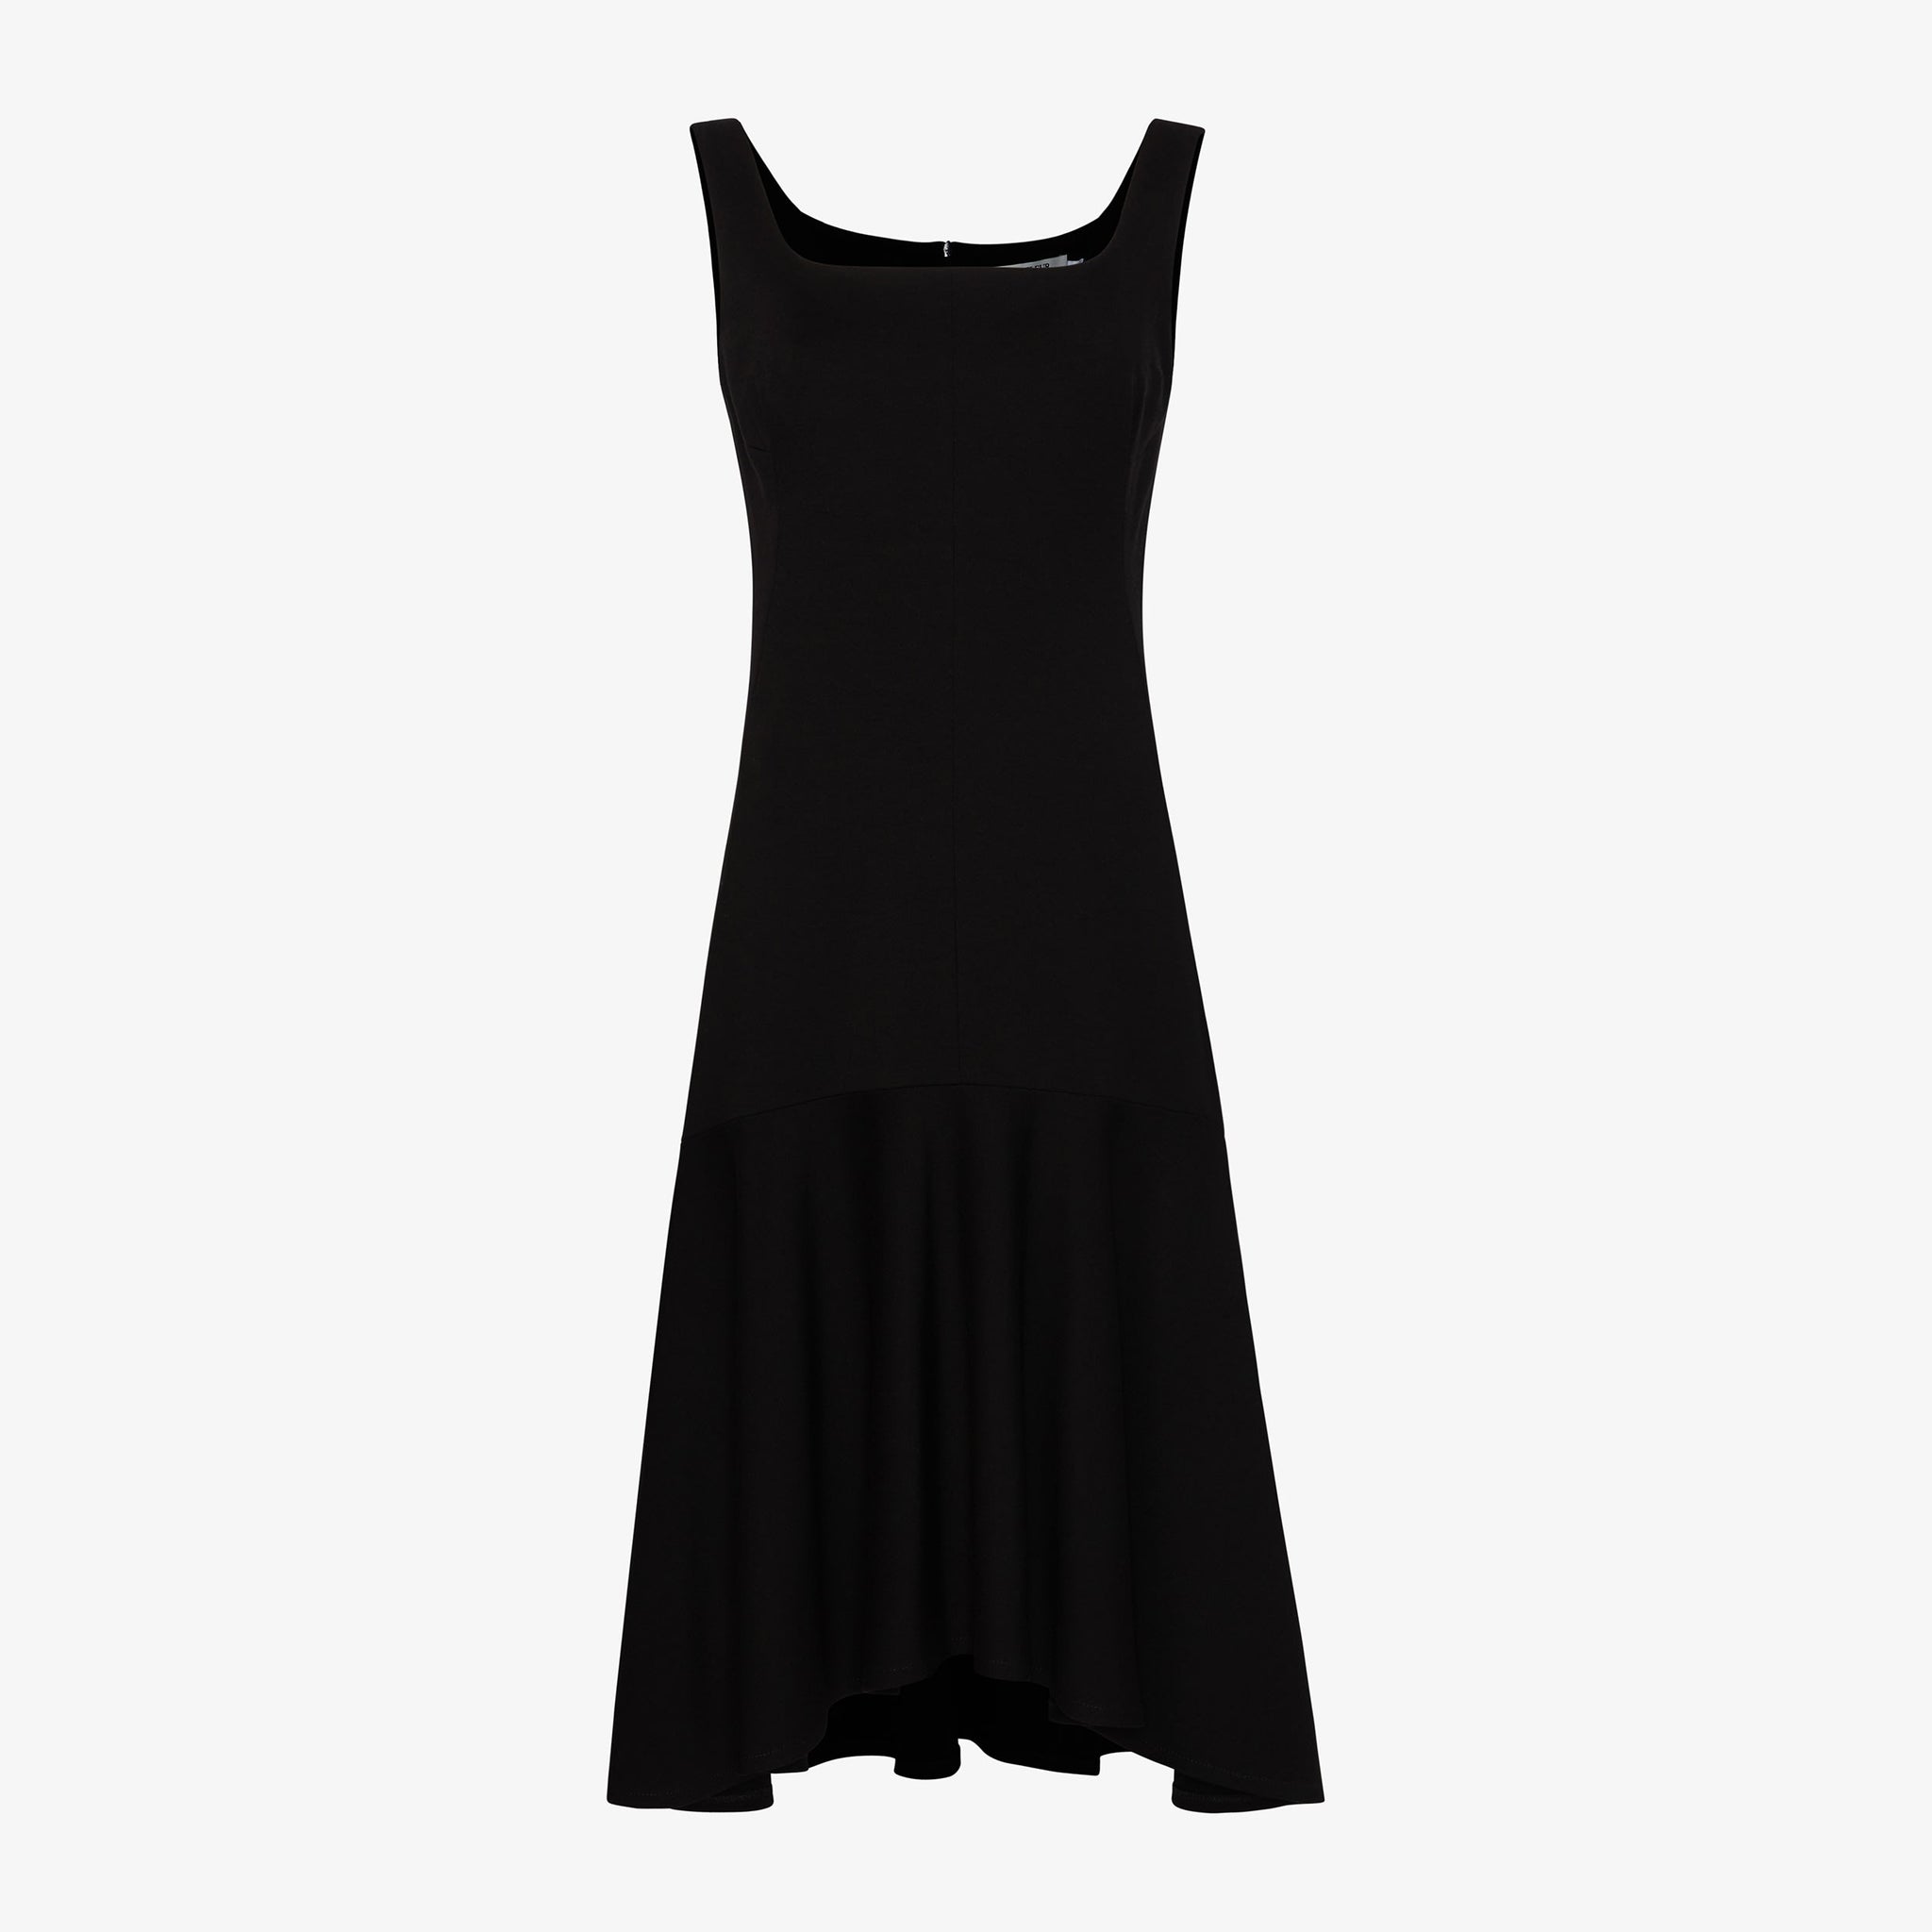 Packshot image of the james dress in black